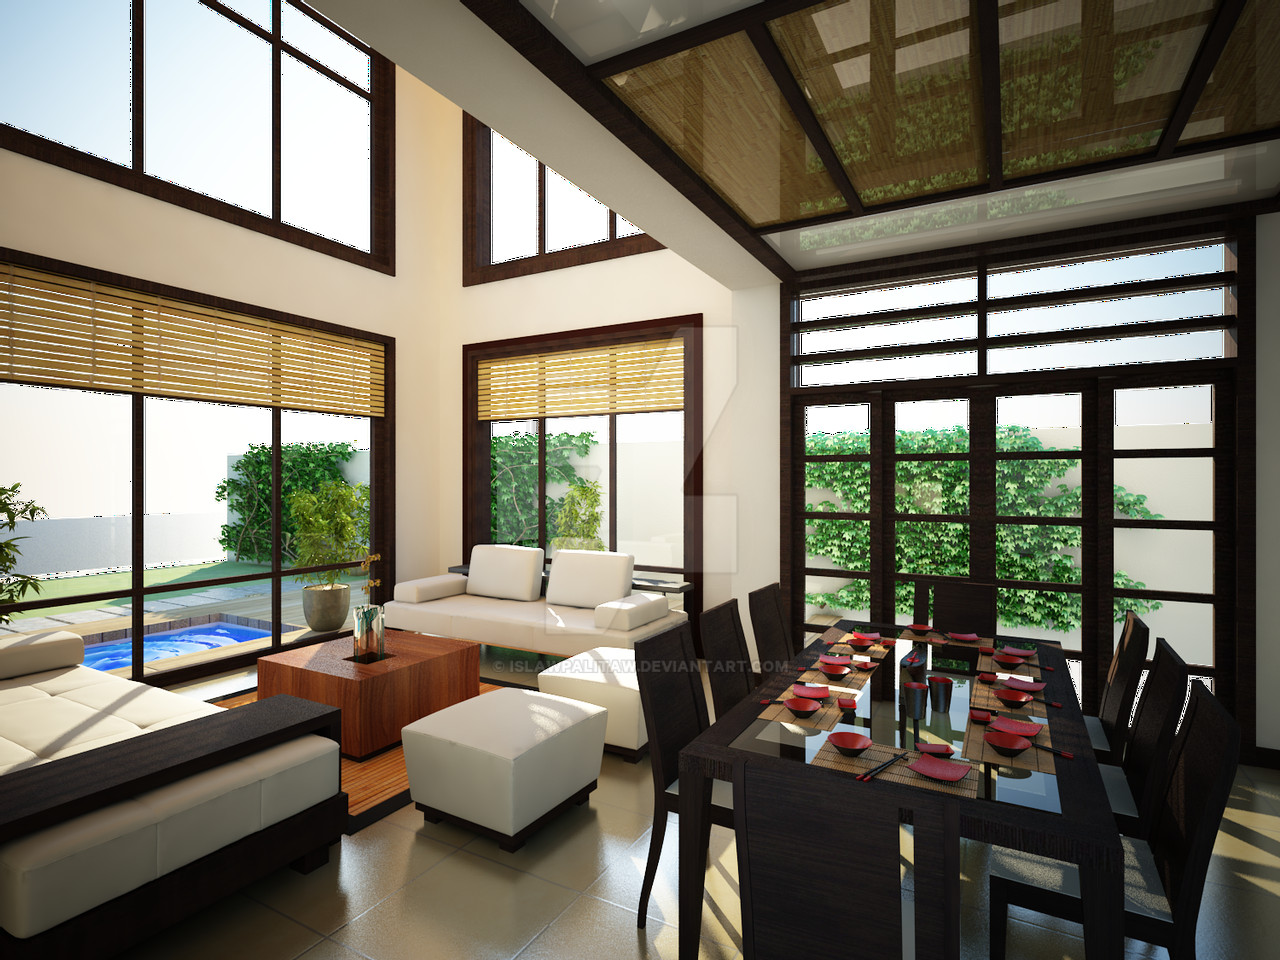 Modern Japanese Living Room
 Japanese Inspired Living Room by islawpalitaw on DeviantArt